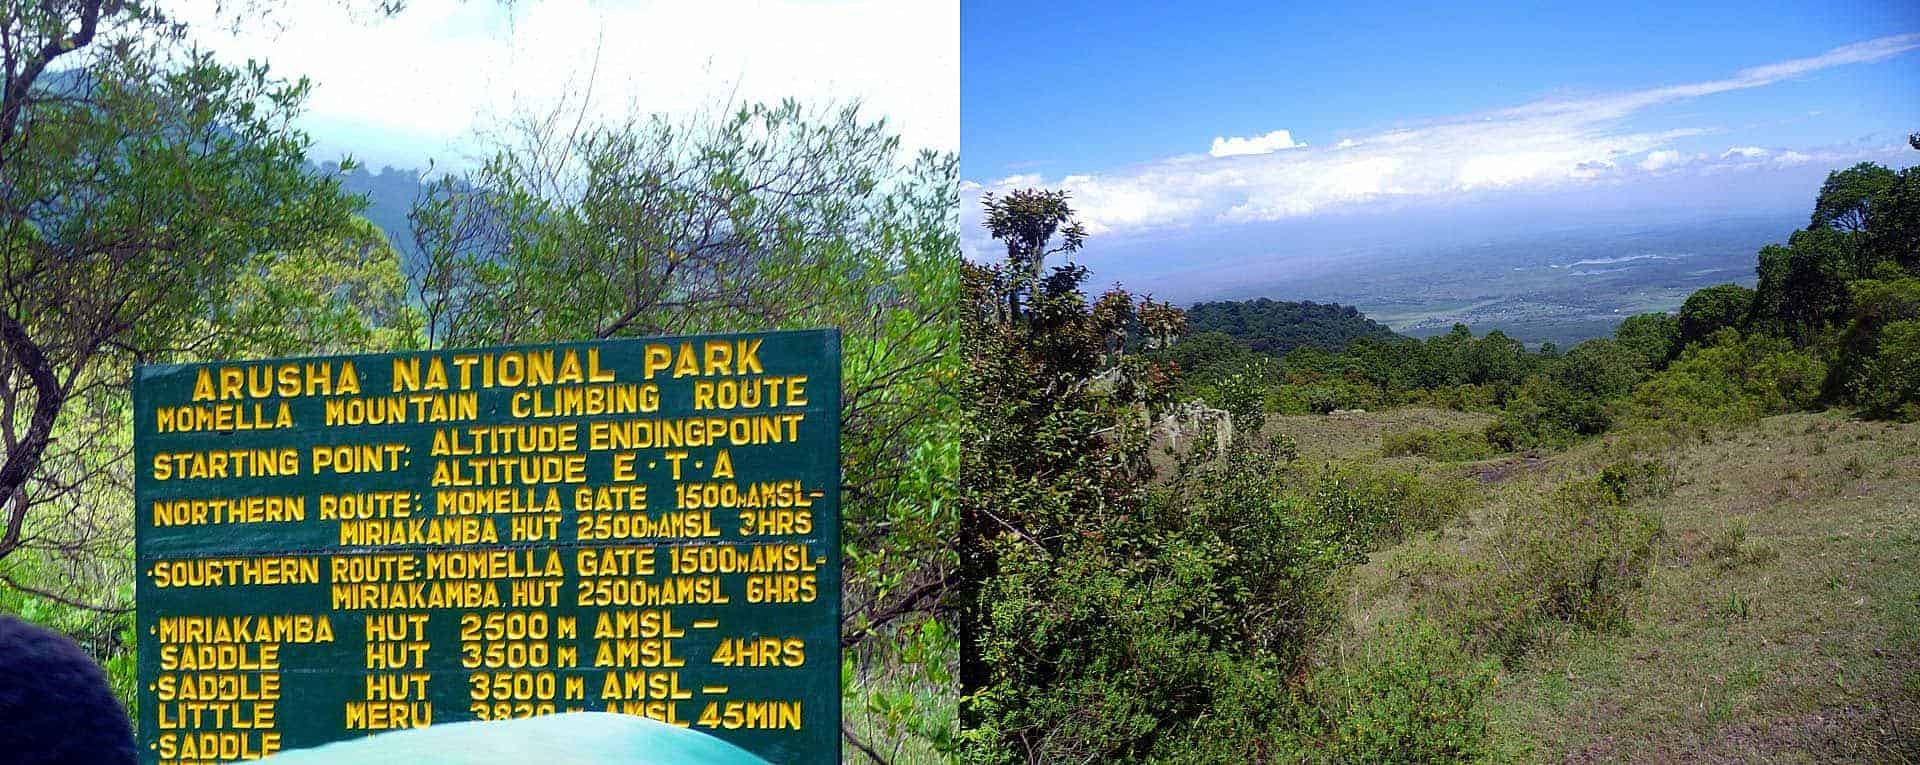 Mount Meru - Wikipedia